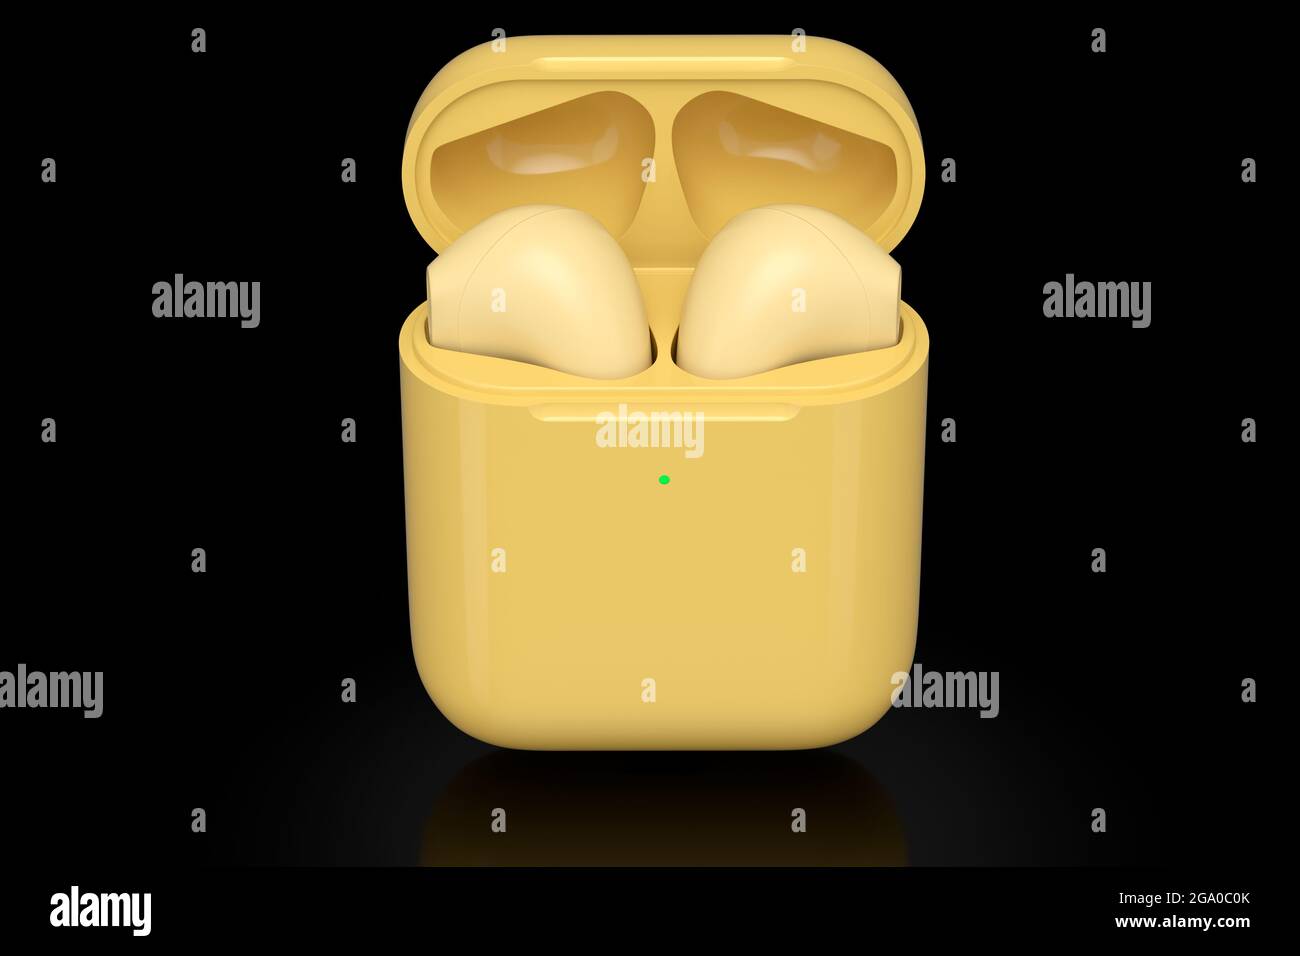 Auriculares Bluetooth inalámbricos en carcasa amarilla aislados sobre fondo negro. 3D Representación de accesorios para escuchar música o trabajar lejos de casa Foto de stock